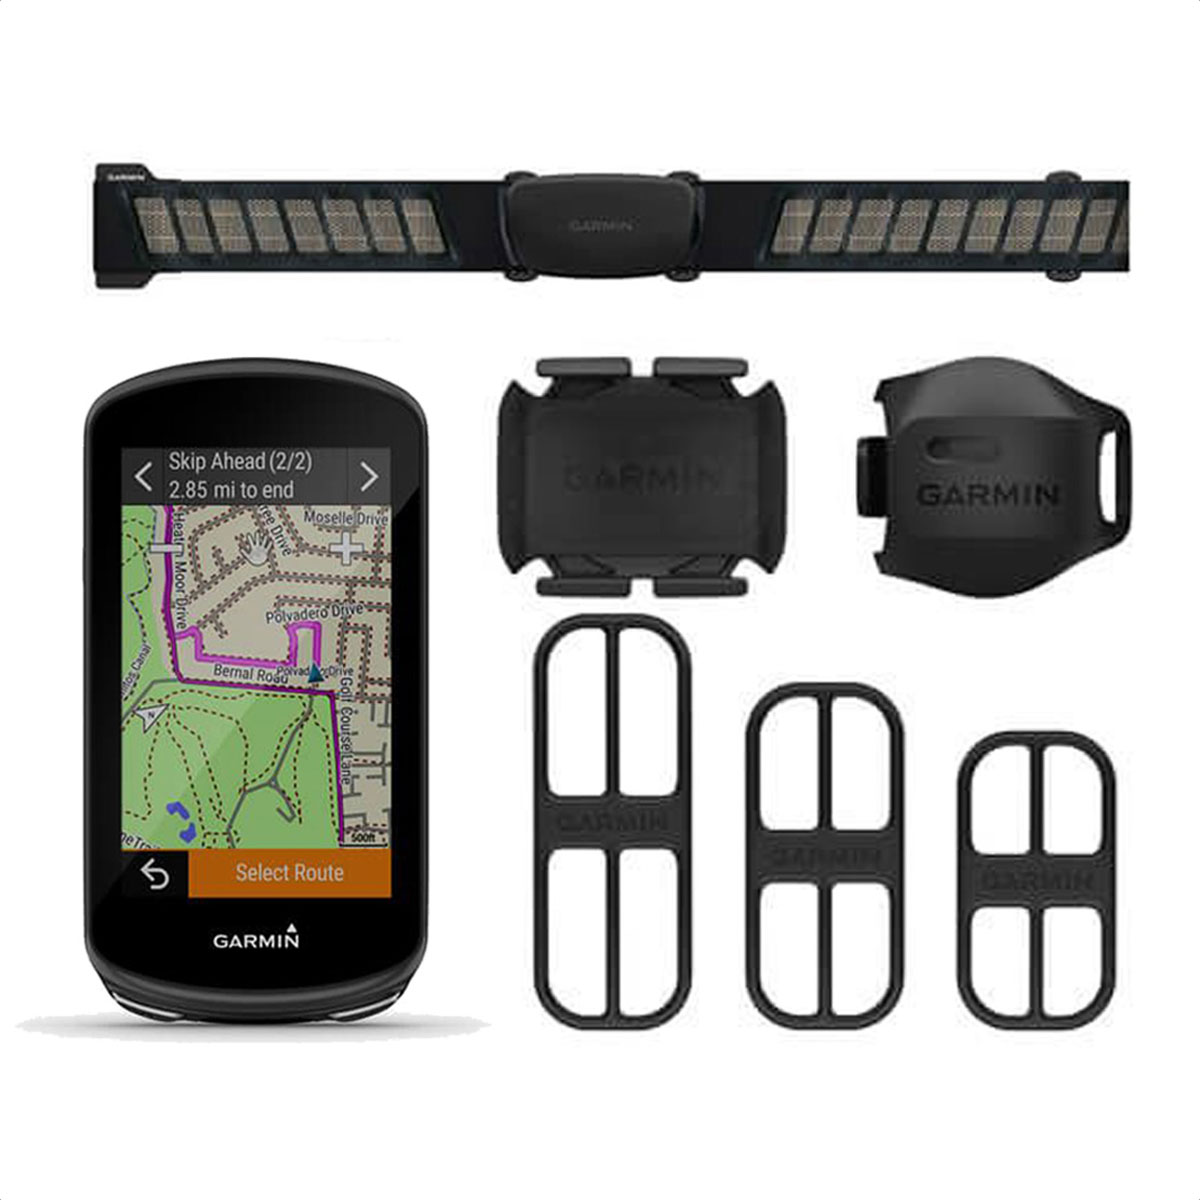 Garmin Edge 1030 Plus, computadora GPS para ciclismo/bicicleta, sugerencias  de entrenamiento en el dispositivo, guía de ritmo ClimbPro y más